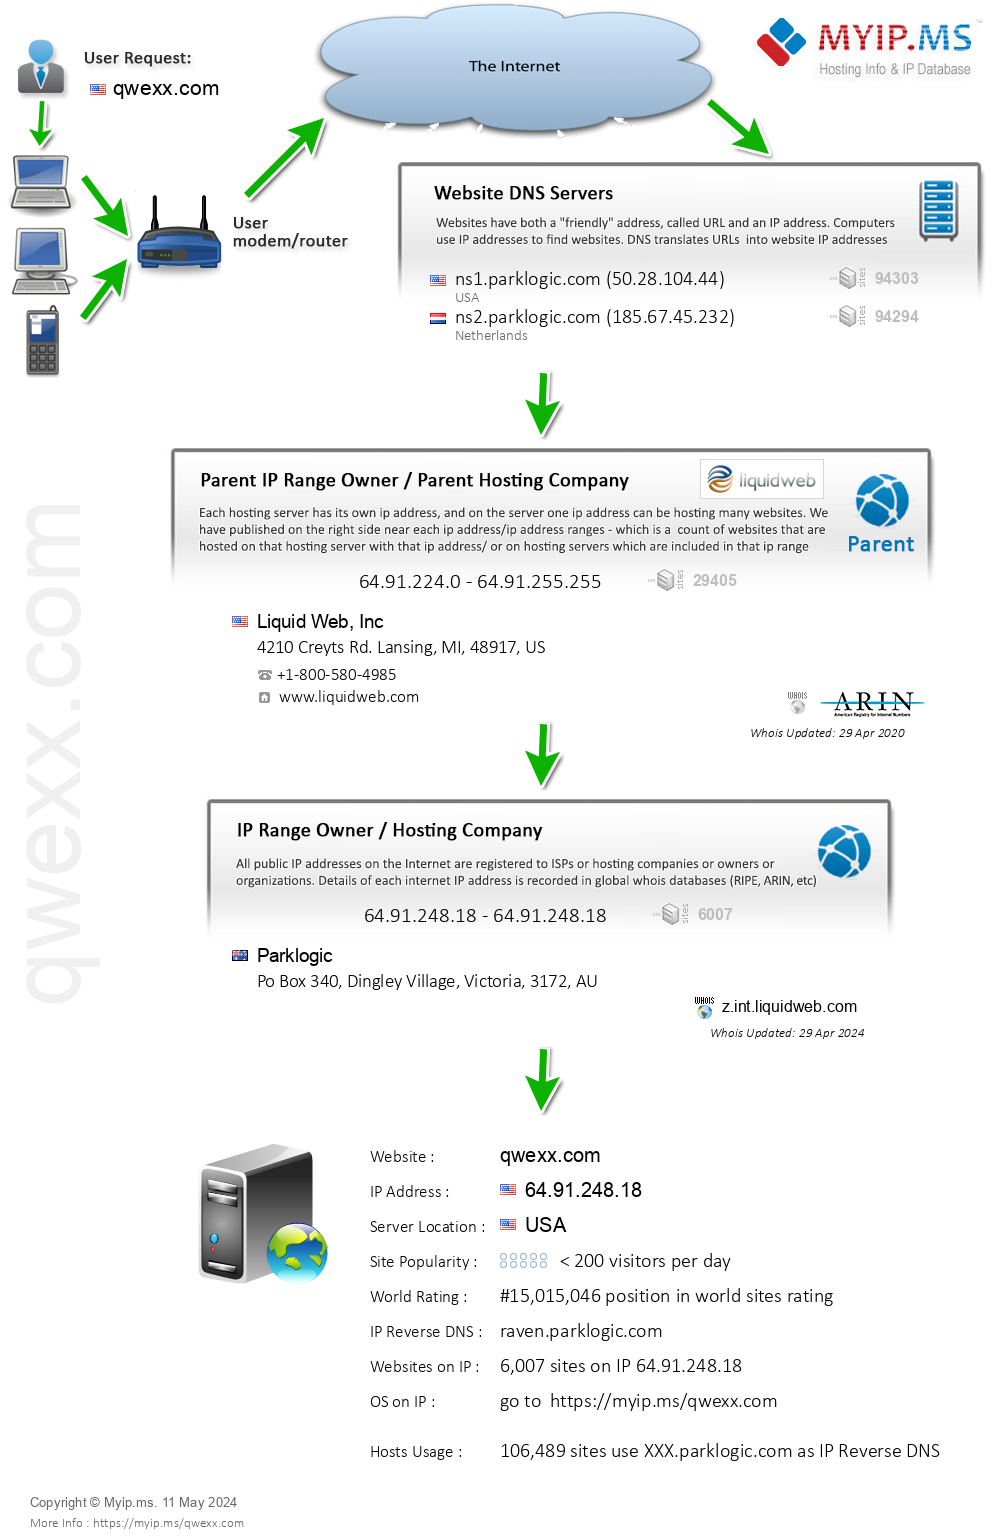 Qwexx.com - Website Hosting Visual IP Diagram